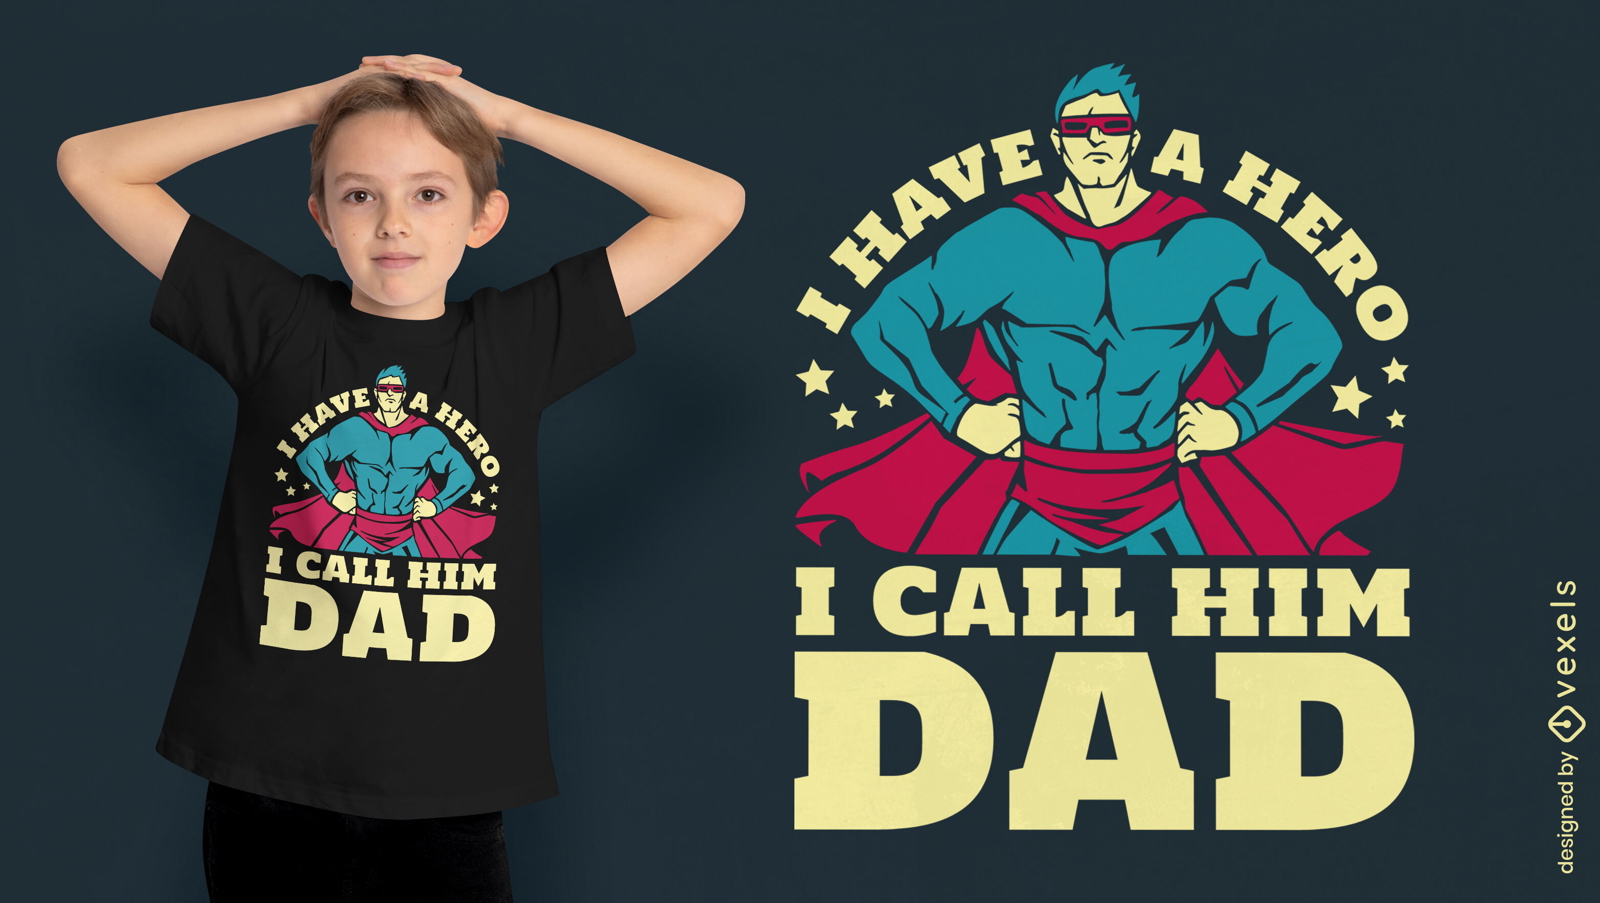 Tengo un héroe. Lo llamo diseño de camiseta con cita de papá.